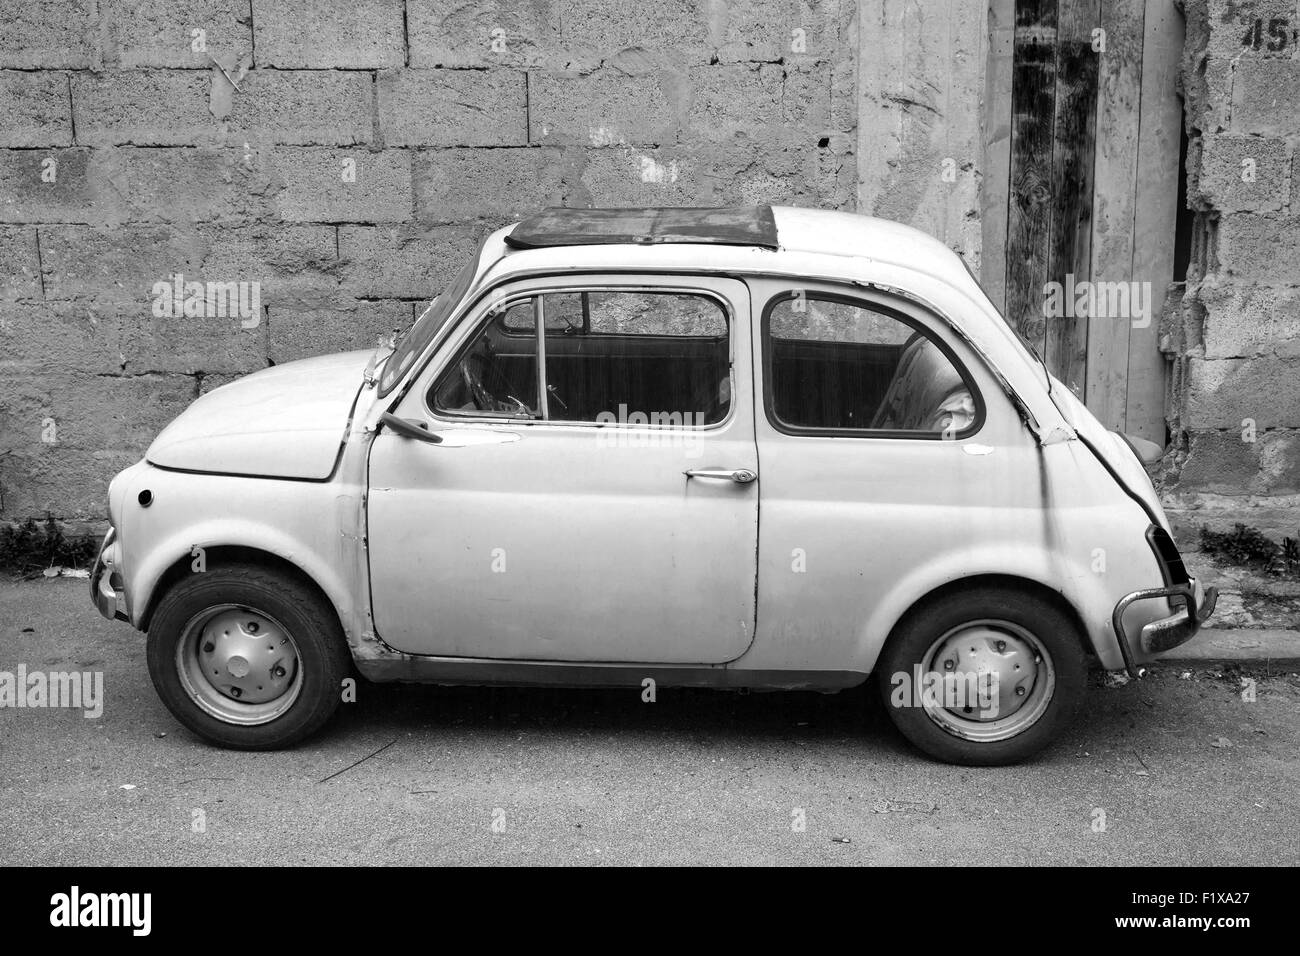 Lacco Ameno, Italia - 15 agosto 2015: Vecchia Fiat Nuova 500 city car prodotta dal costruttore italiano Fiat tra 1957 e 197 Foto Stock